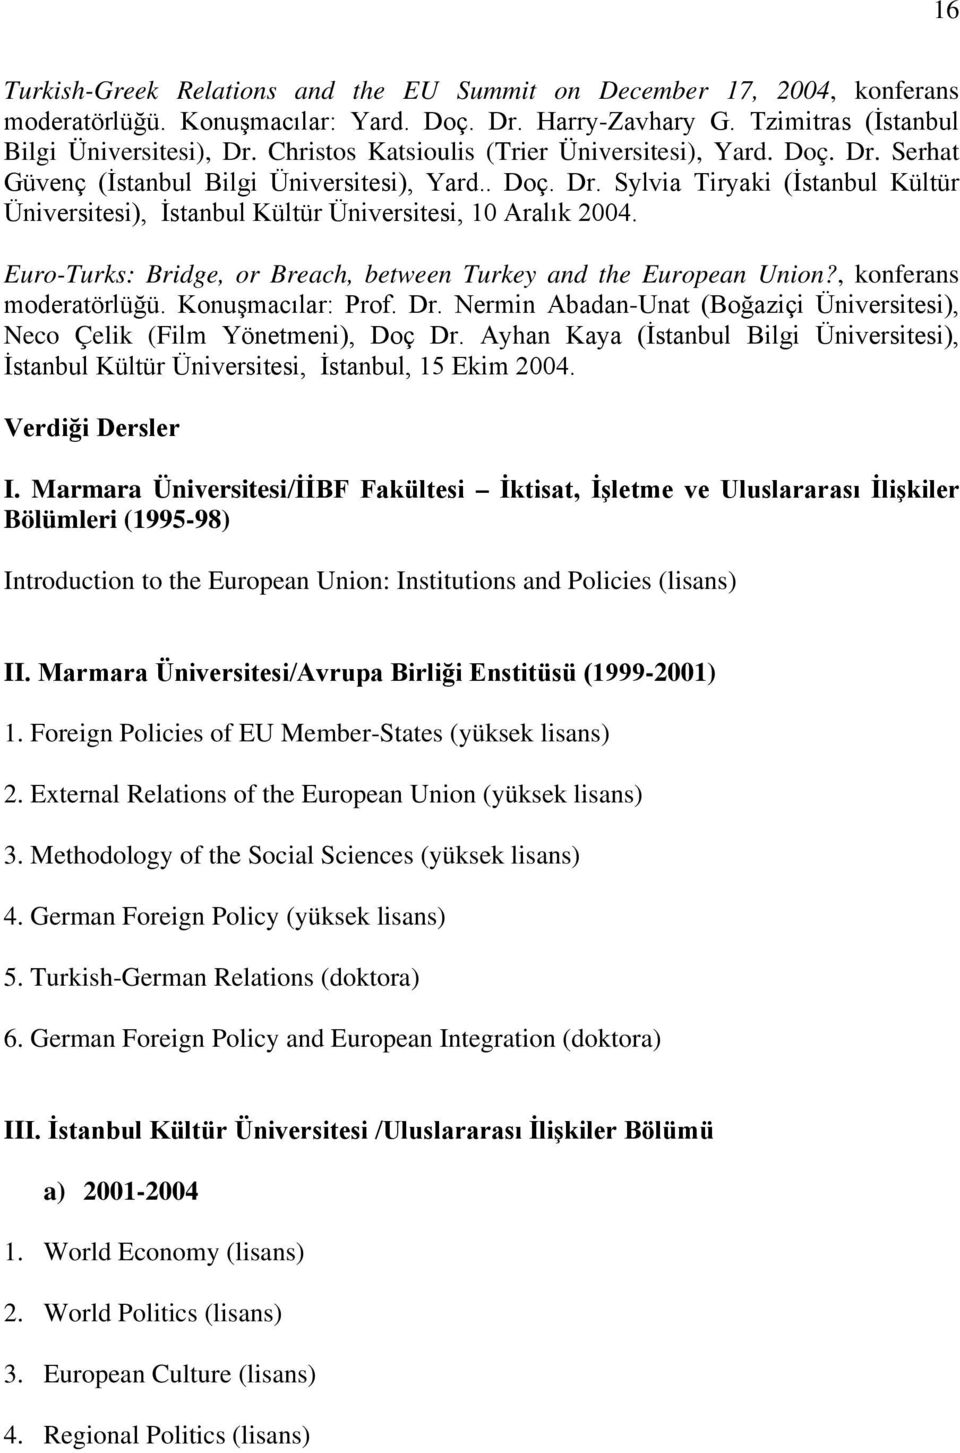 Euro-Turks: Bridge, or Breach, between Turkey and the European Union?, konferans moderatörlüğü. Konuşmacılar: Prof. Dr. Nermin Abadan-Unat (Boğaziçi Üniversitesi), Neco Çelik (Film Yönetmeni), Doç Dr.